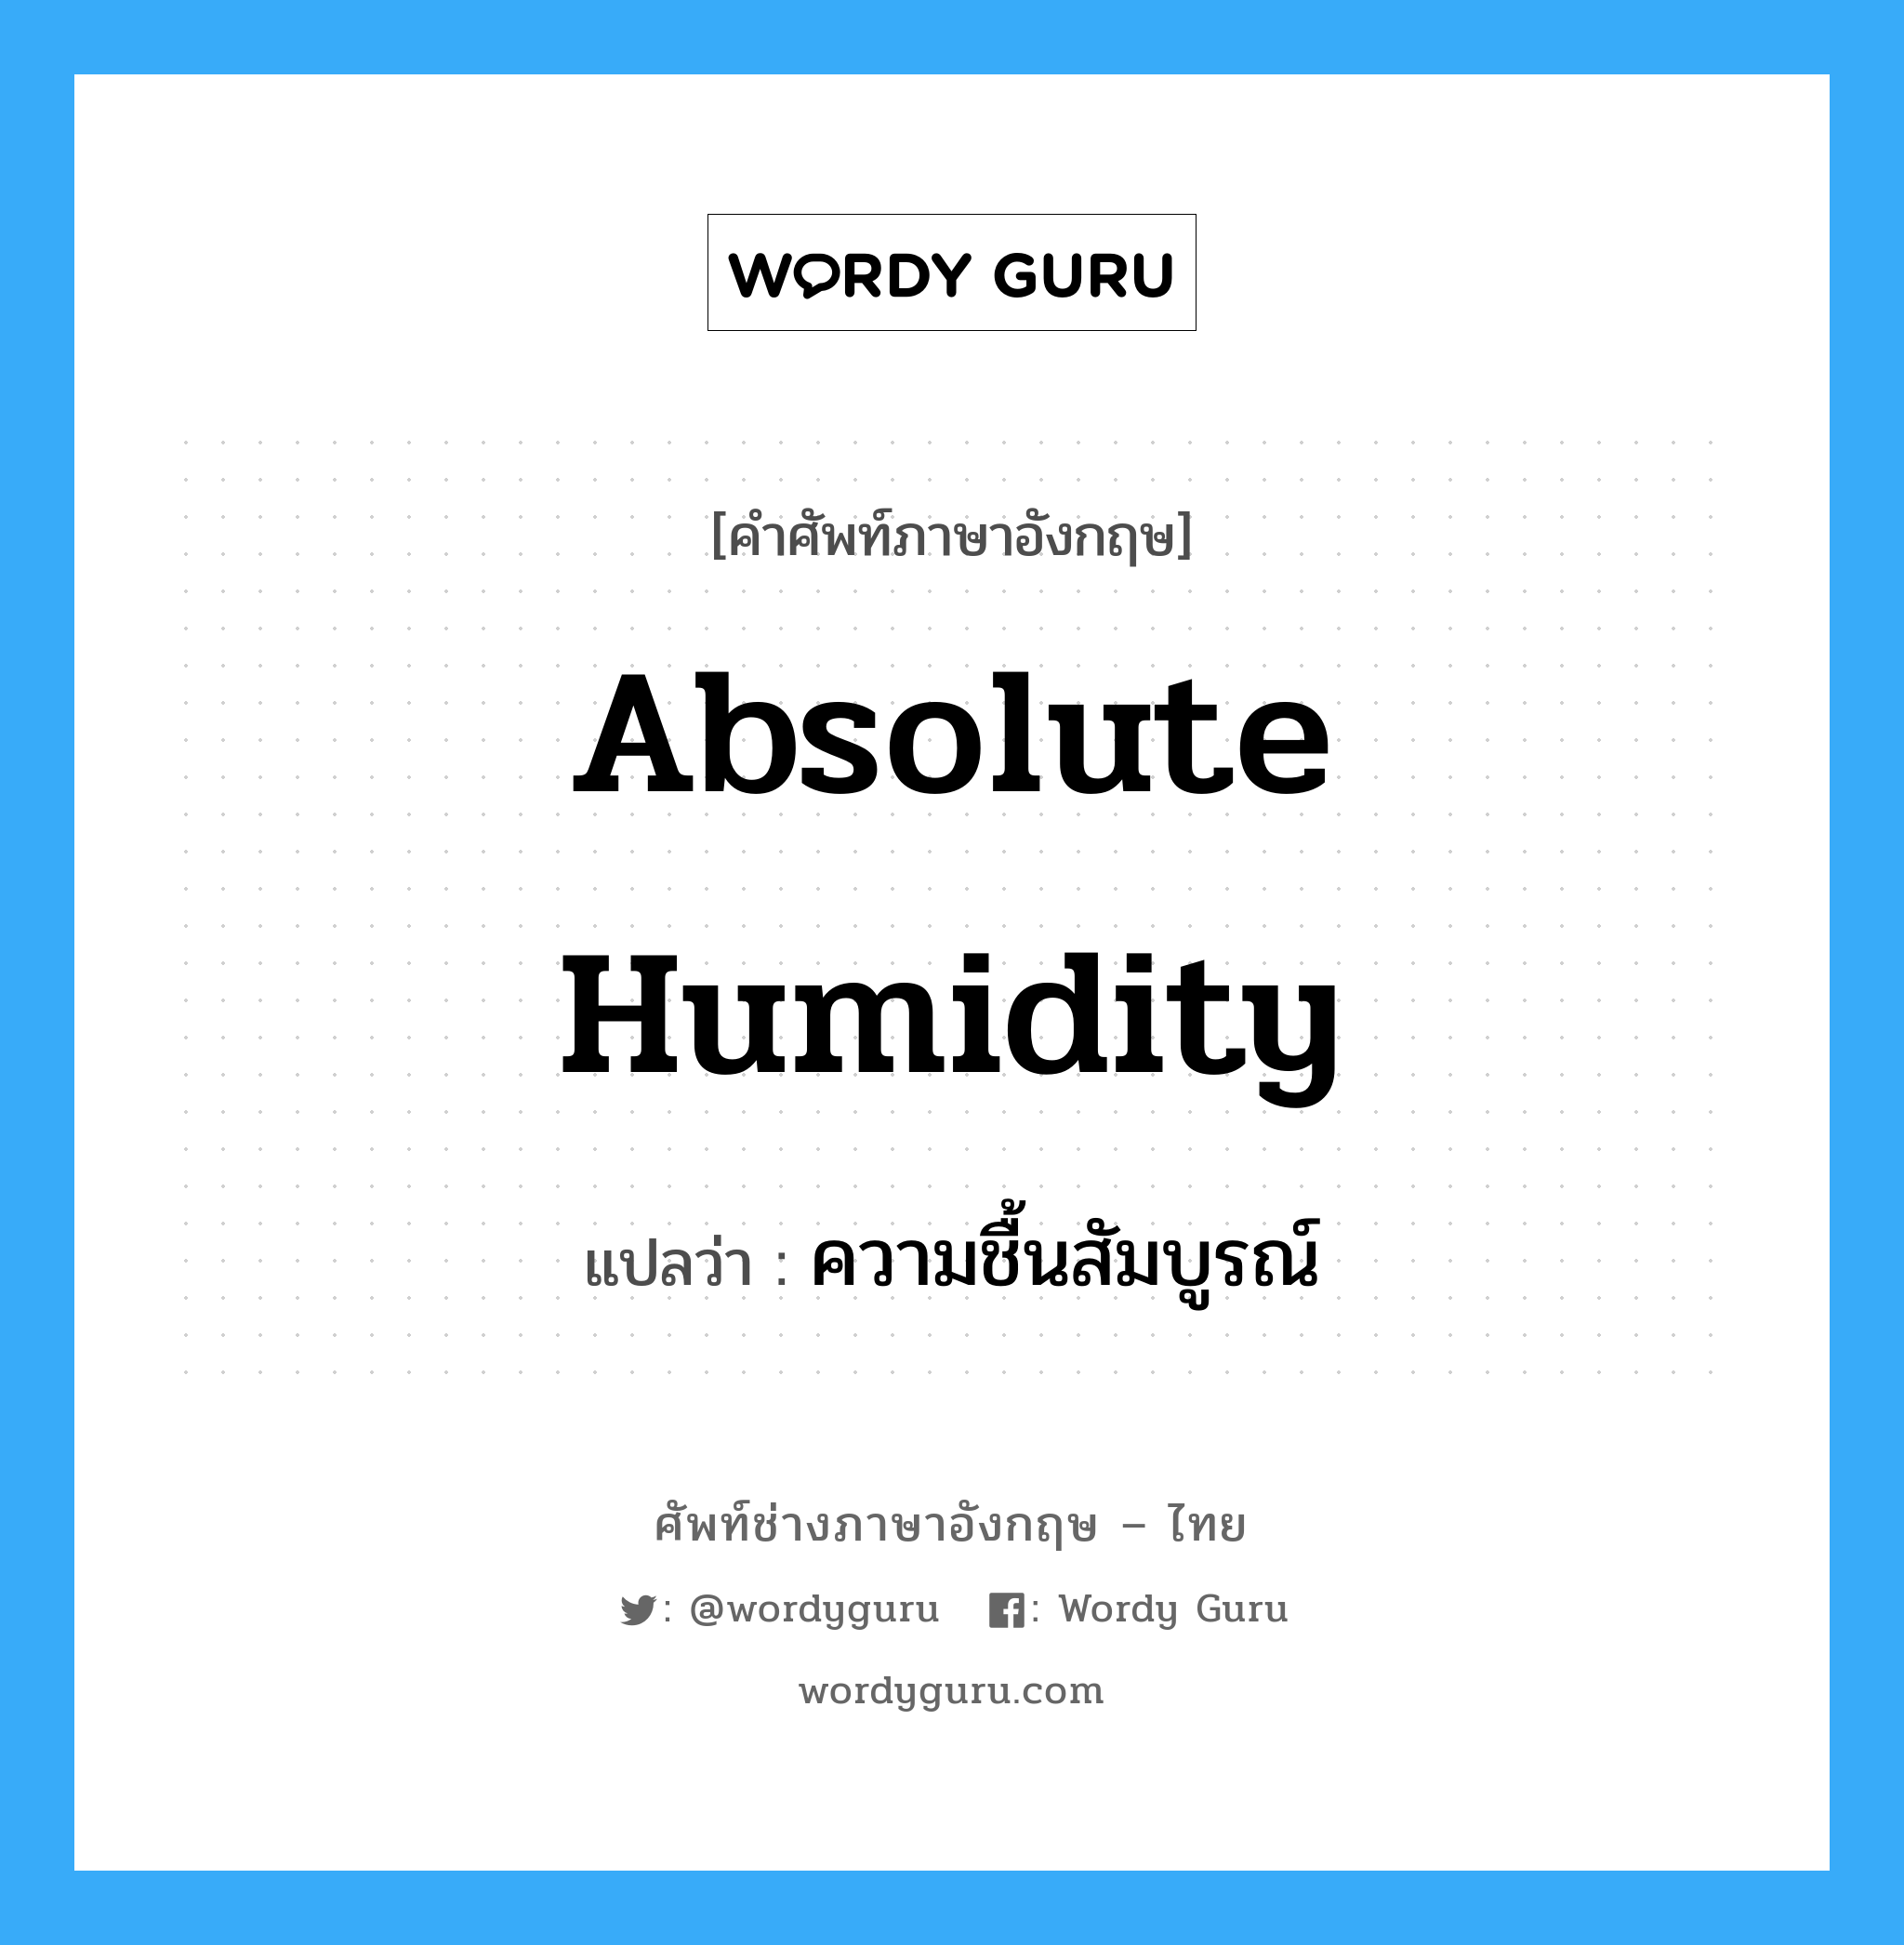 ความชื้นสัมบูรณ์ ภาษาอังกฤษ?, คำศัพท์ช่างภาษาอังกฤษ - ไทย ความชื้นสัมบูรณ์ คำศัพท์ภาษาอังกฤษ ความชื้นสัมบูรณ์ แปลว่า absolute humidity